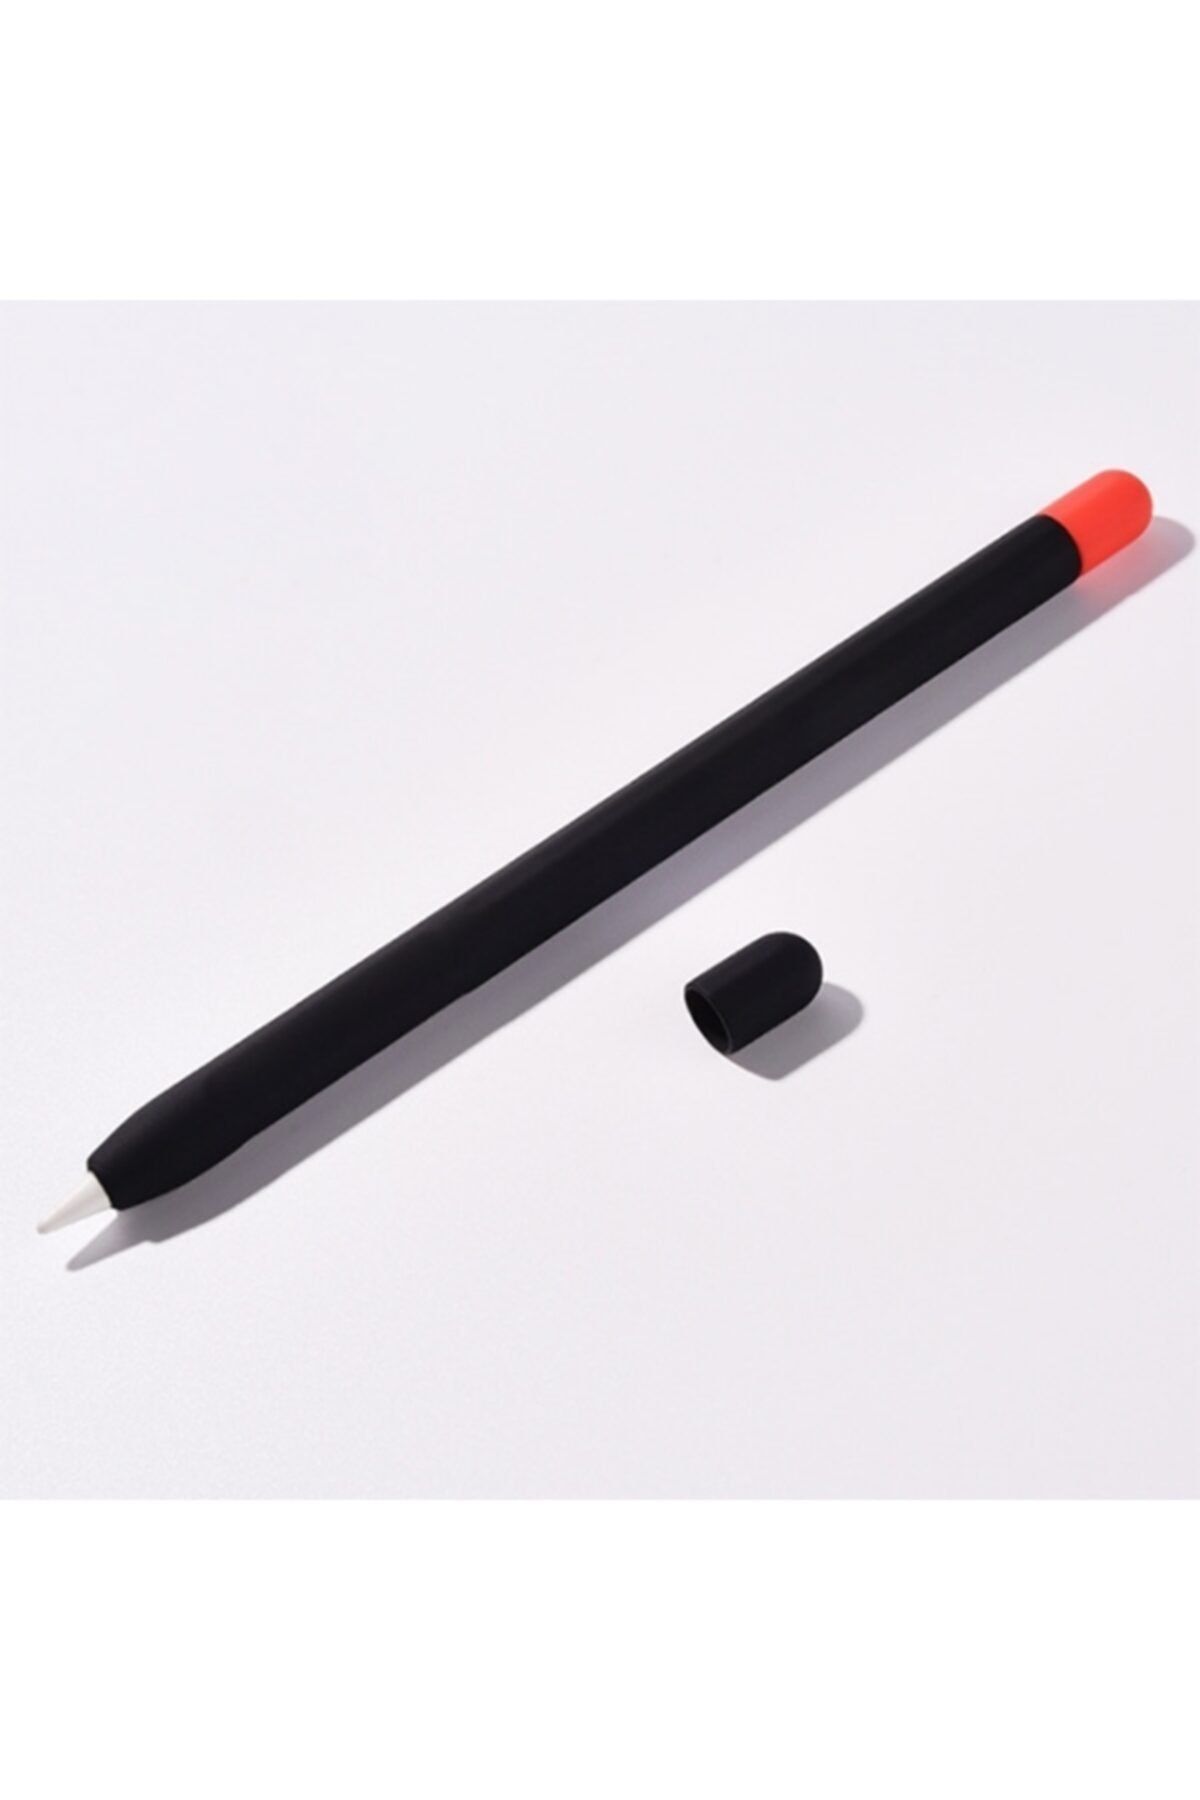 Marcador Apple Pencil 2 Için Koruyucu Kaymaz Silikon Kılıf + 2 Renk Arka Kapak Kırmızı + Siyah